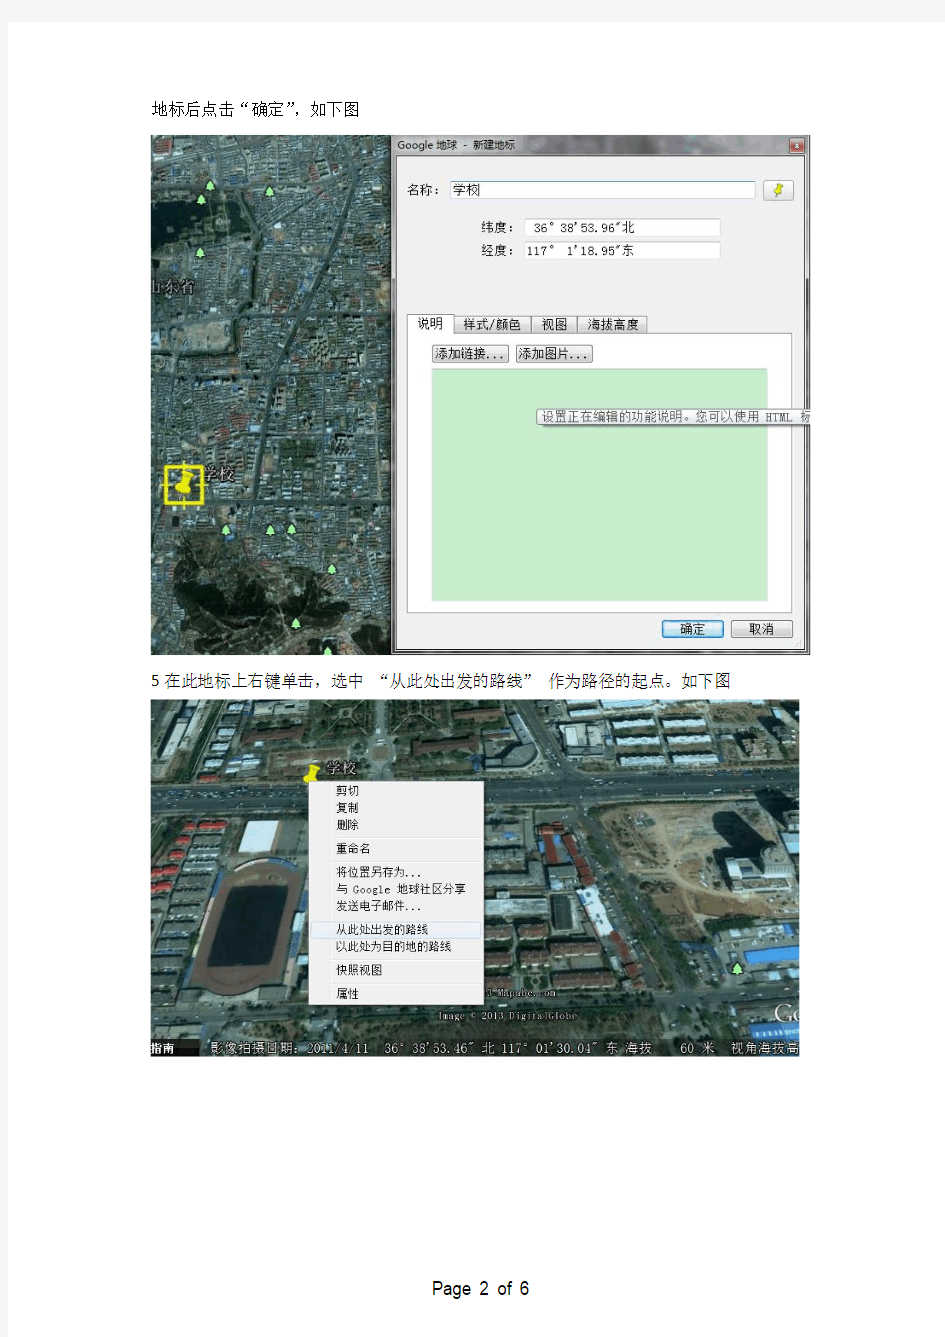 将在Google Earth上画出的路径信息导出为KML文件的方法